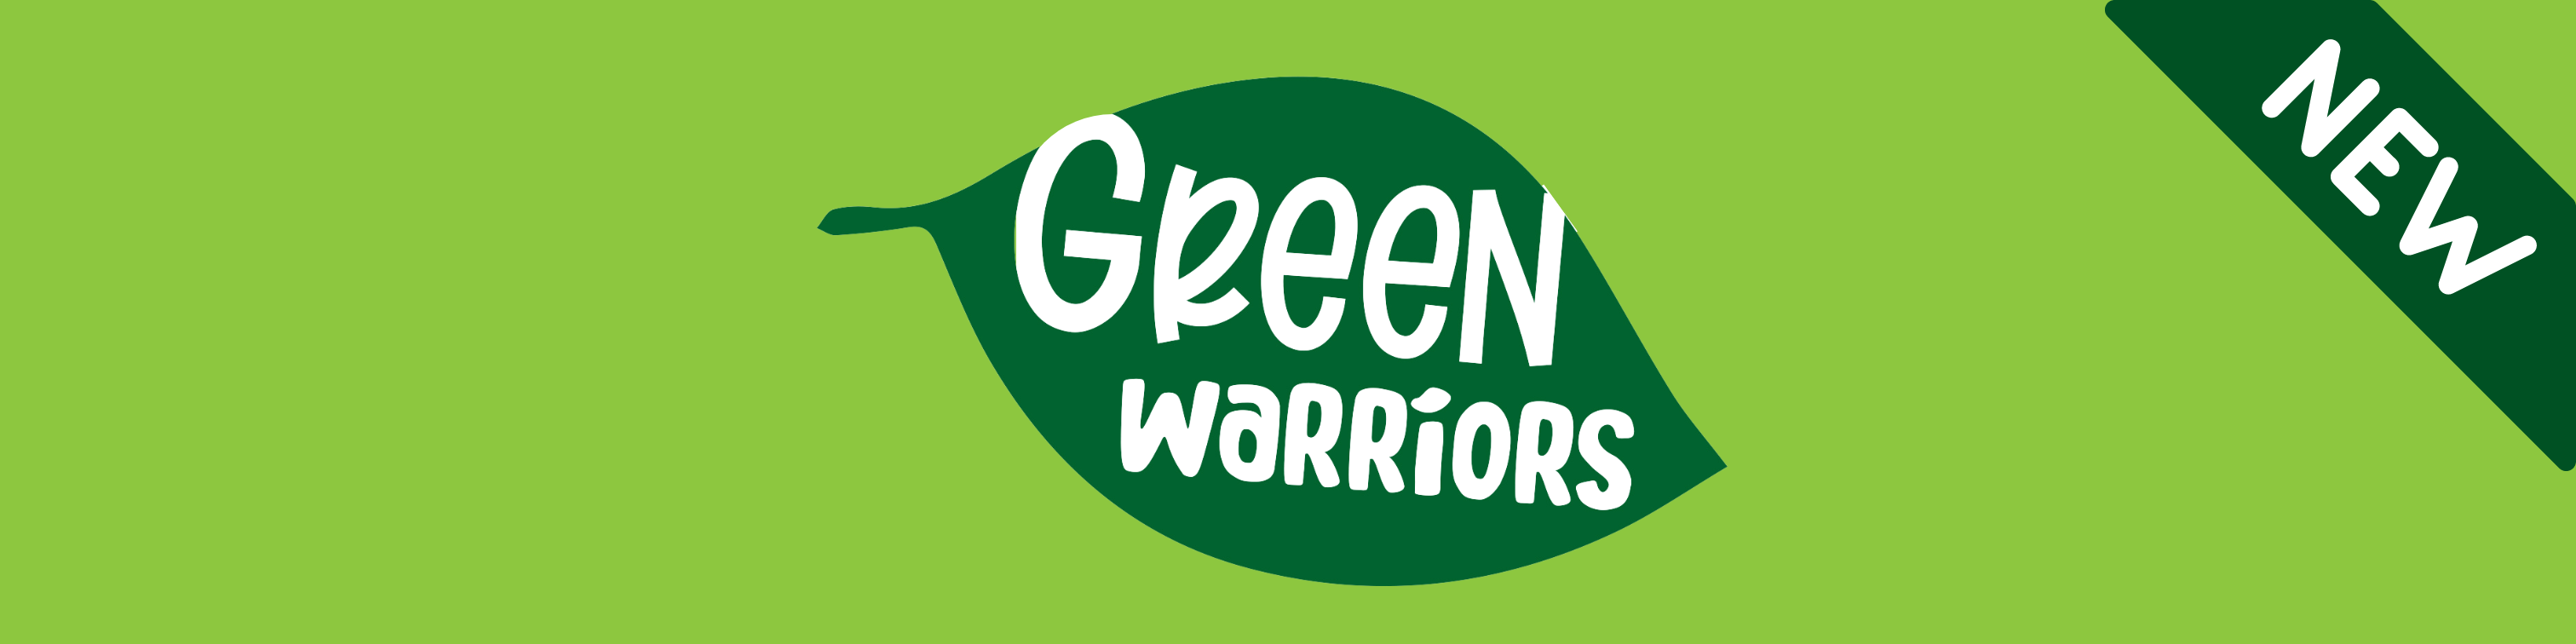 banner green warr